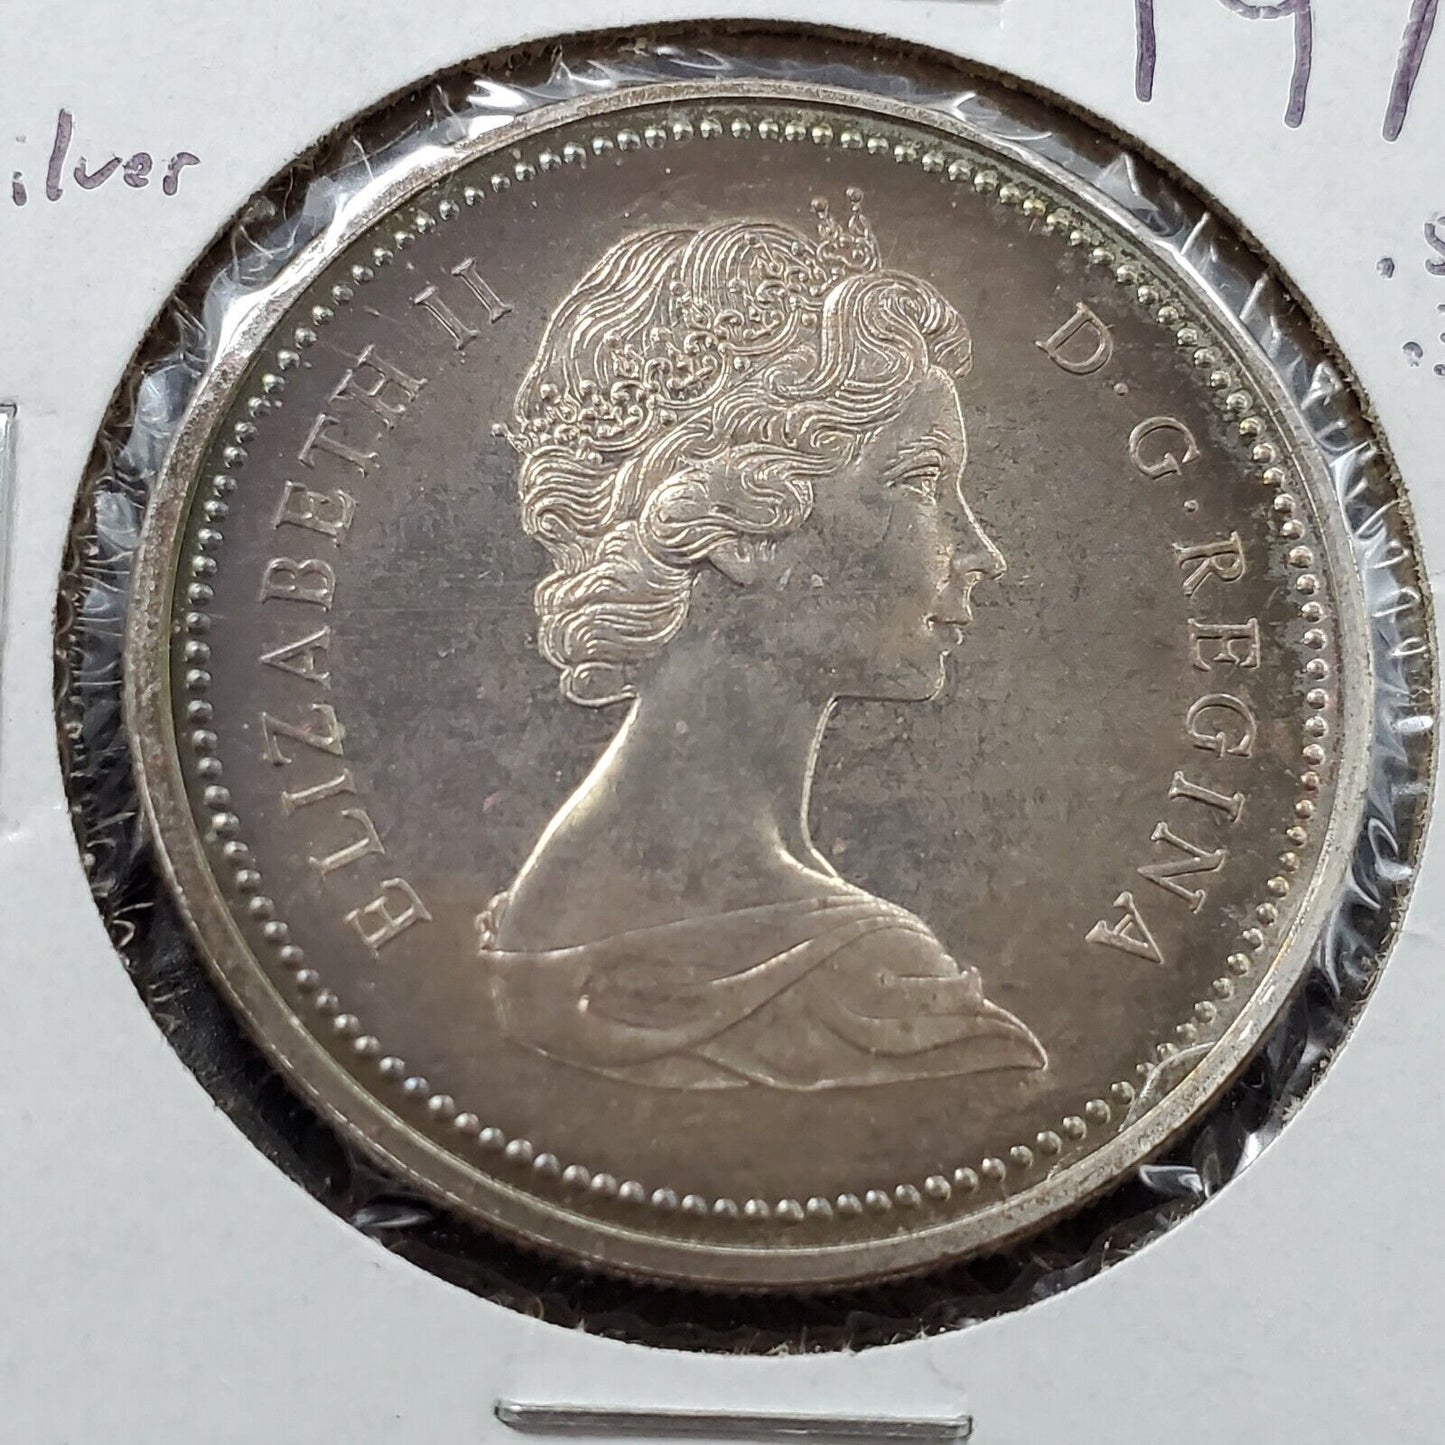 1971 Canada $1 Dollar British Columbia Commemorative Silver Neat Toning Toner